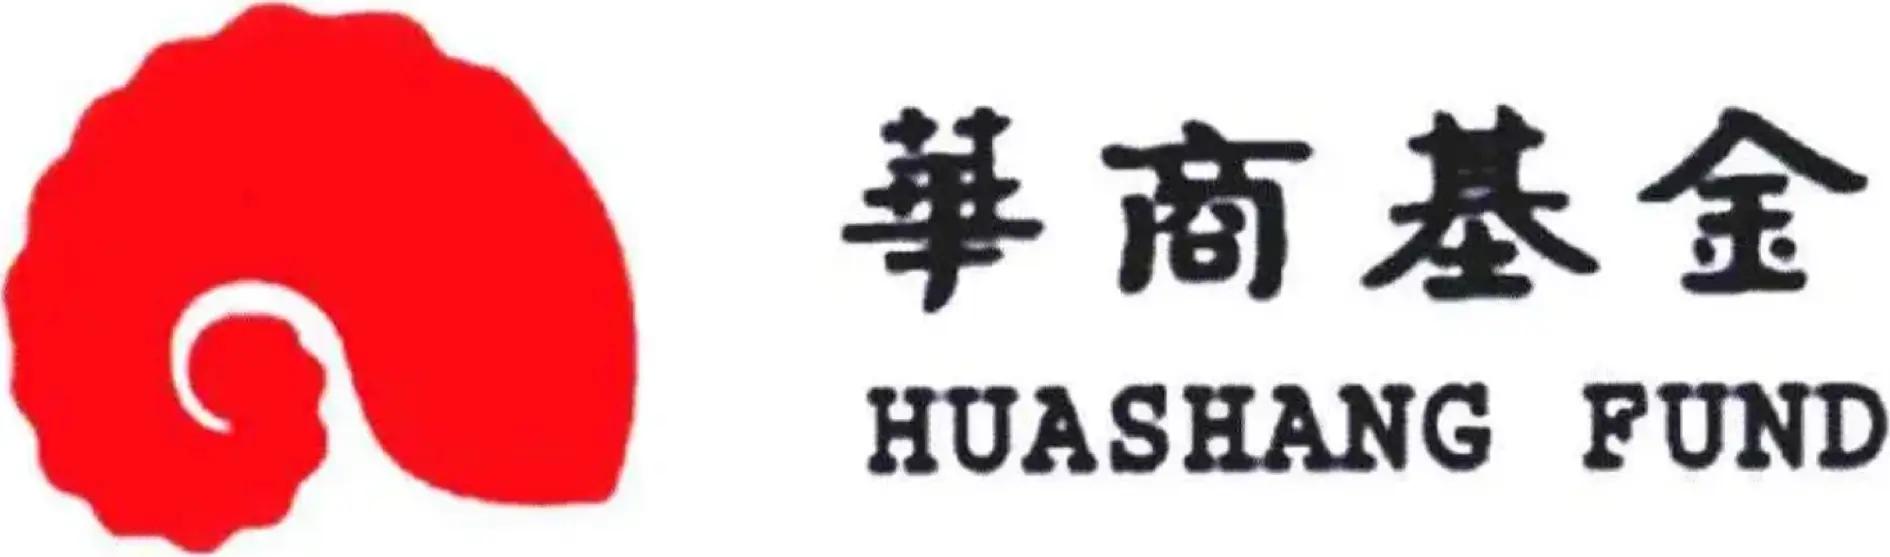 华商基金·HUASHANG FUND